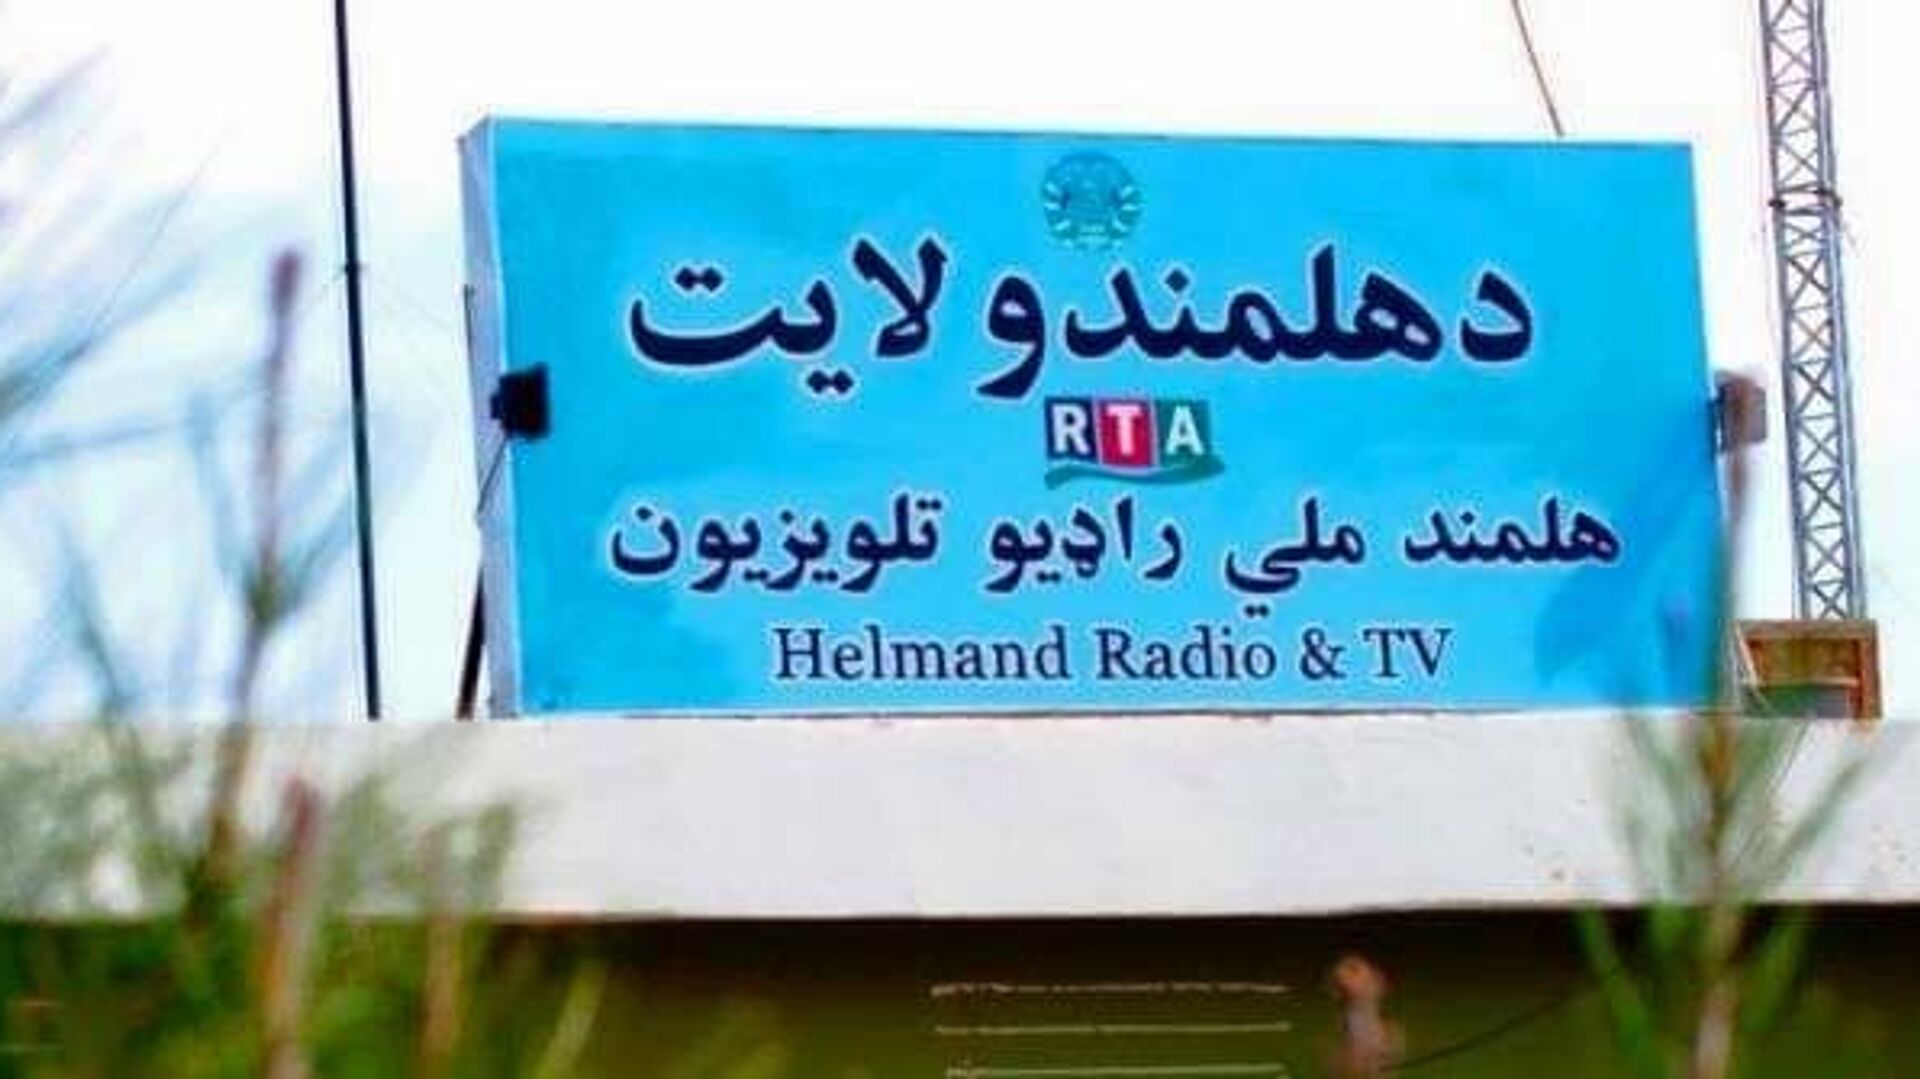  طالبان مرکز رادیو تلویزیون ملی هلمند را تصرف کردند - اسپوتنیک افغانستان  , 1920, 21.02.2023